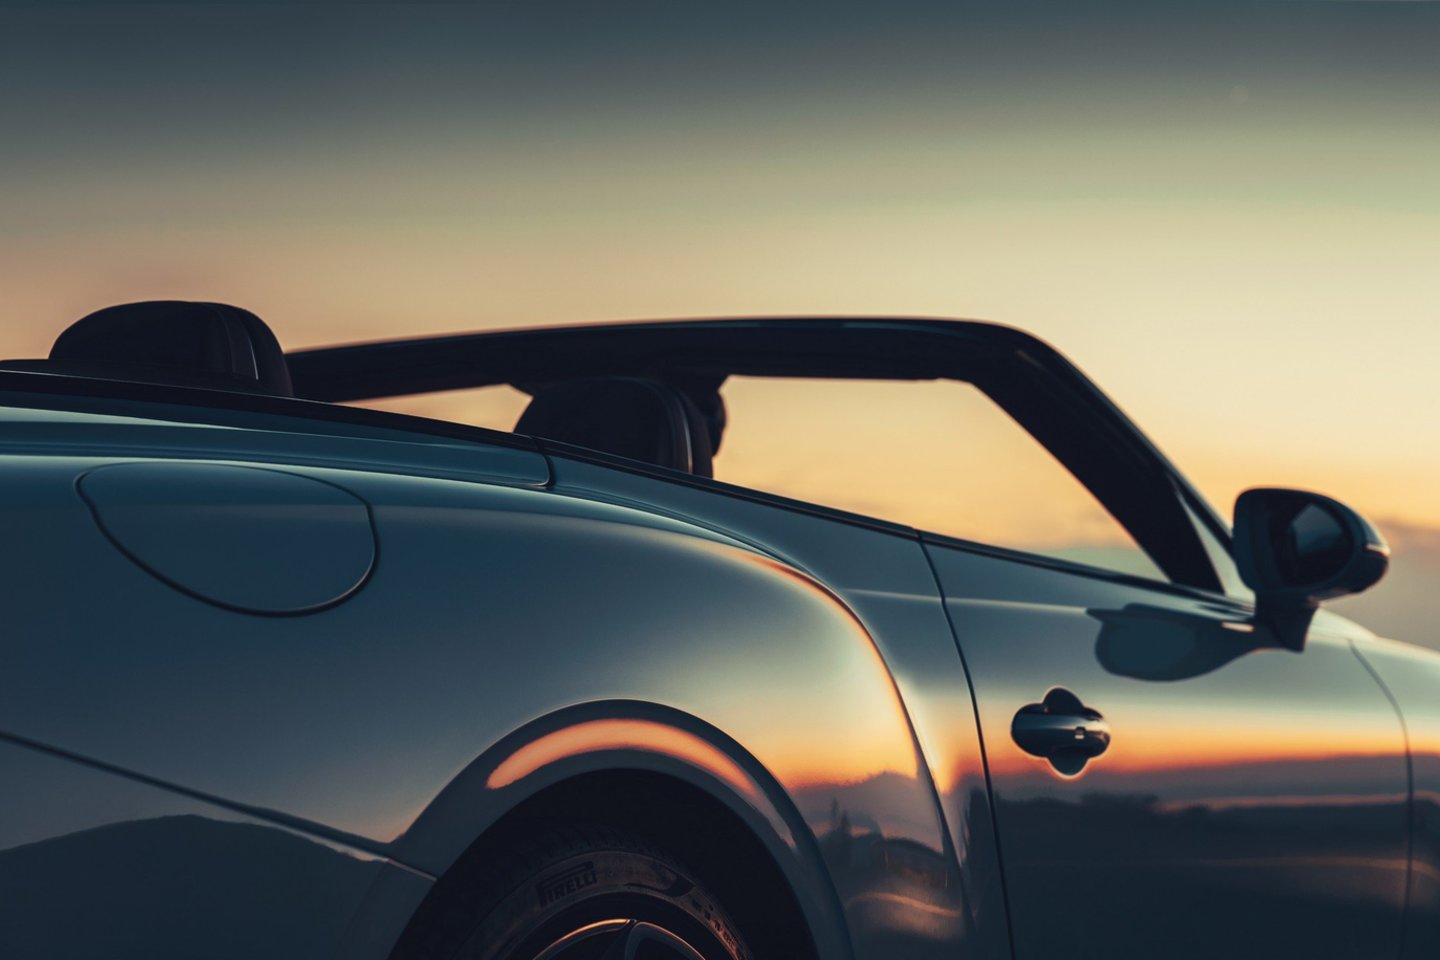 2019 metais rinkoje pasirodysiantis „Bentley Continental GT“ kabrioletas – jau trečios kartos modelis.<br> Gamintojo nuotr.